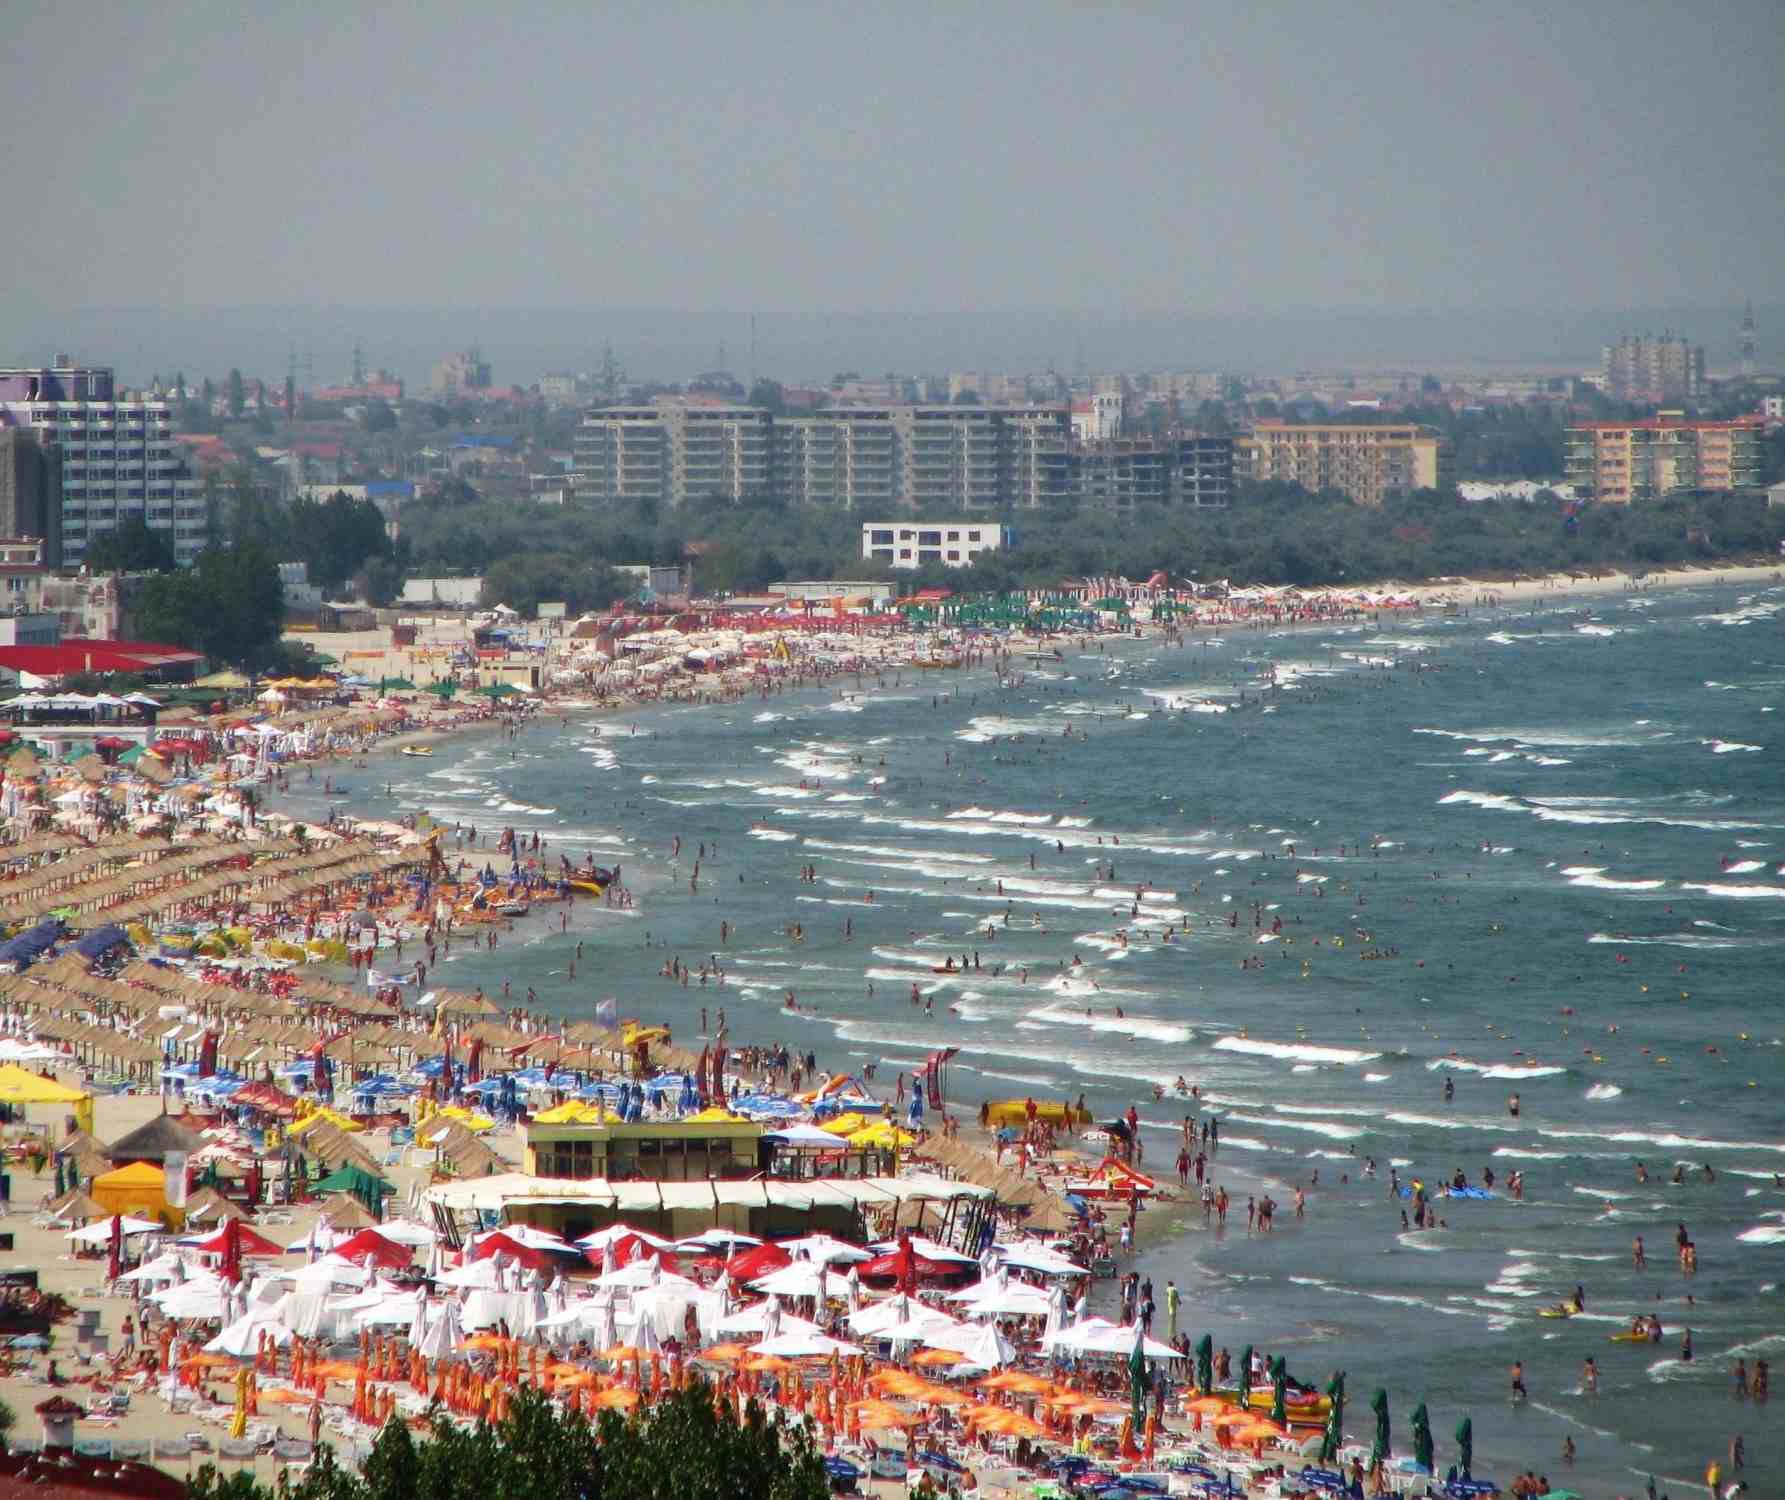 Turiştii sosiţi din Israel apreciază plajele româneşti şi dau garanţii că se vor întoarce